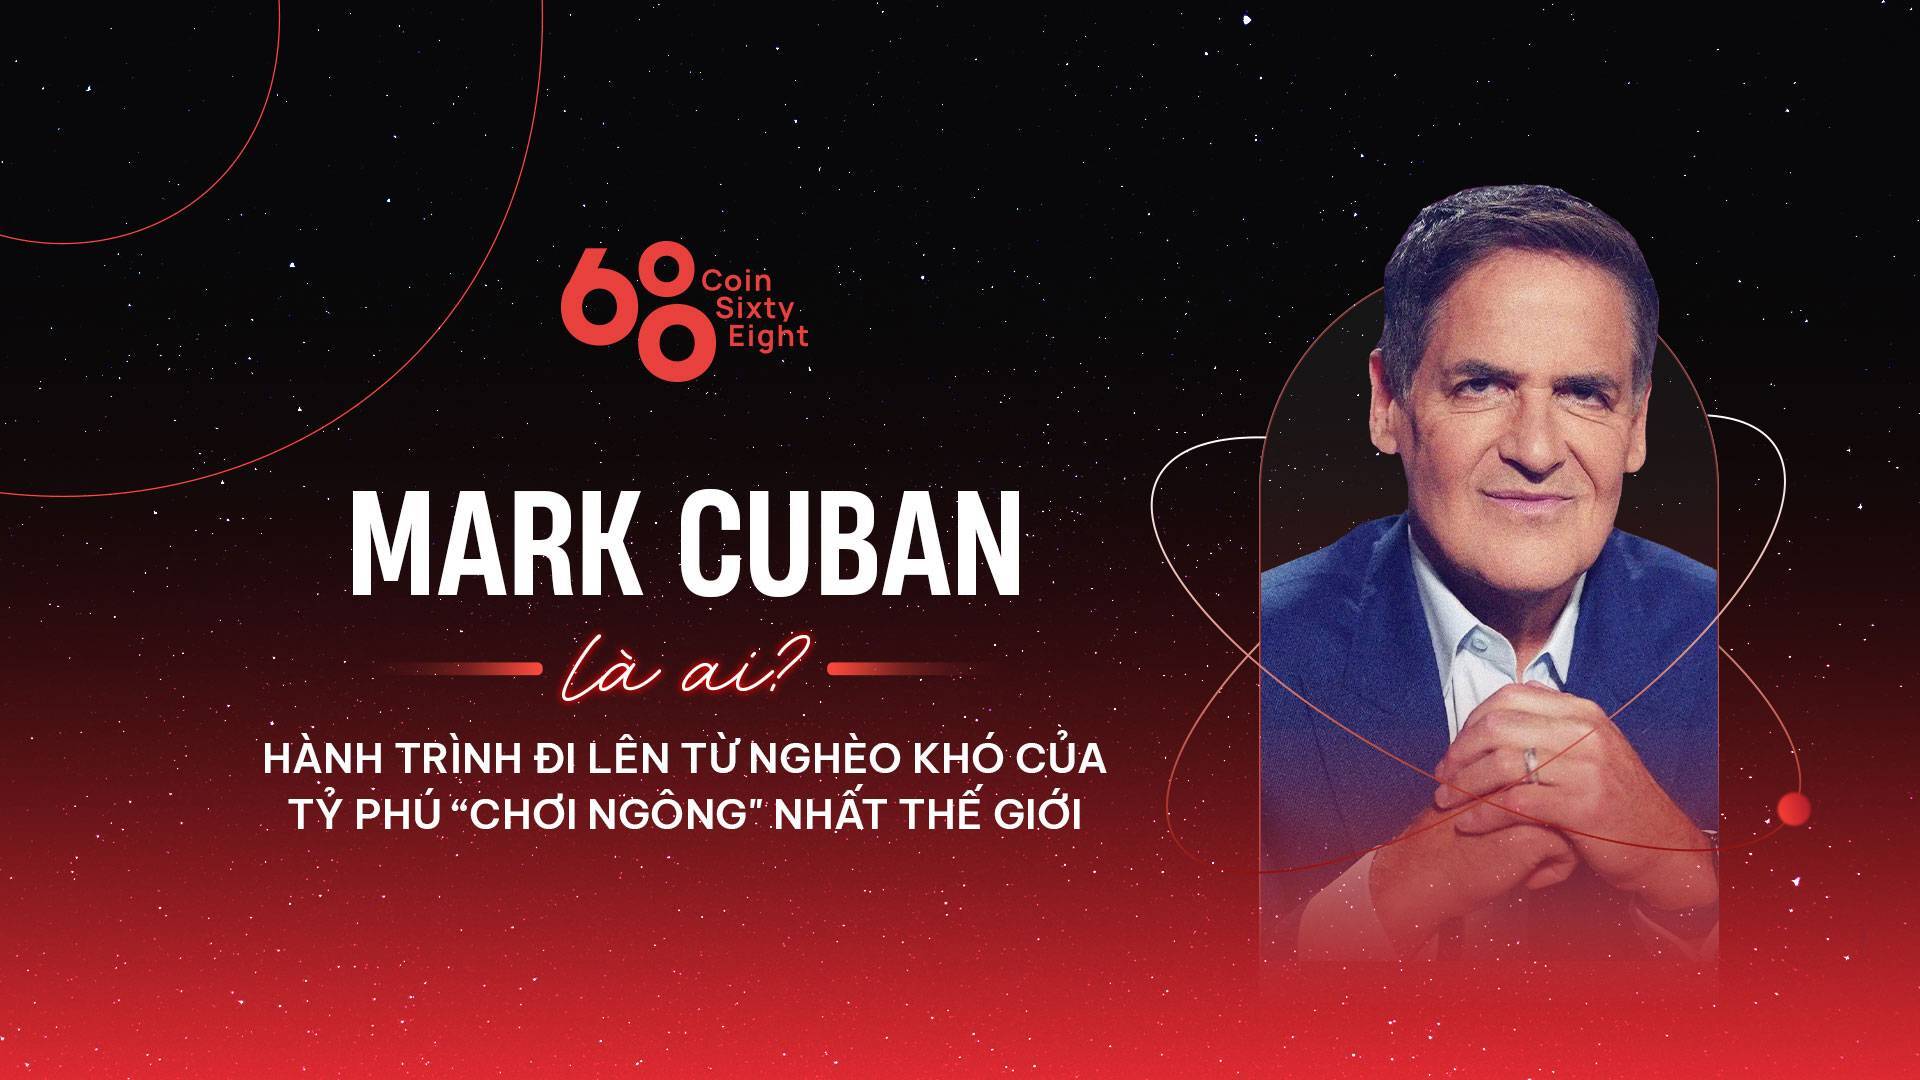 Mark Cuban Là Ai Hành Trình Đi Lên Từ Nghèo Khó Của Tỷ Phú chơi Ngông Nhất Thế Giới